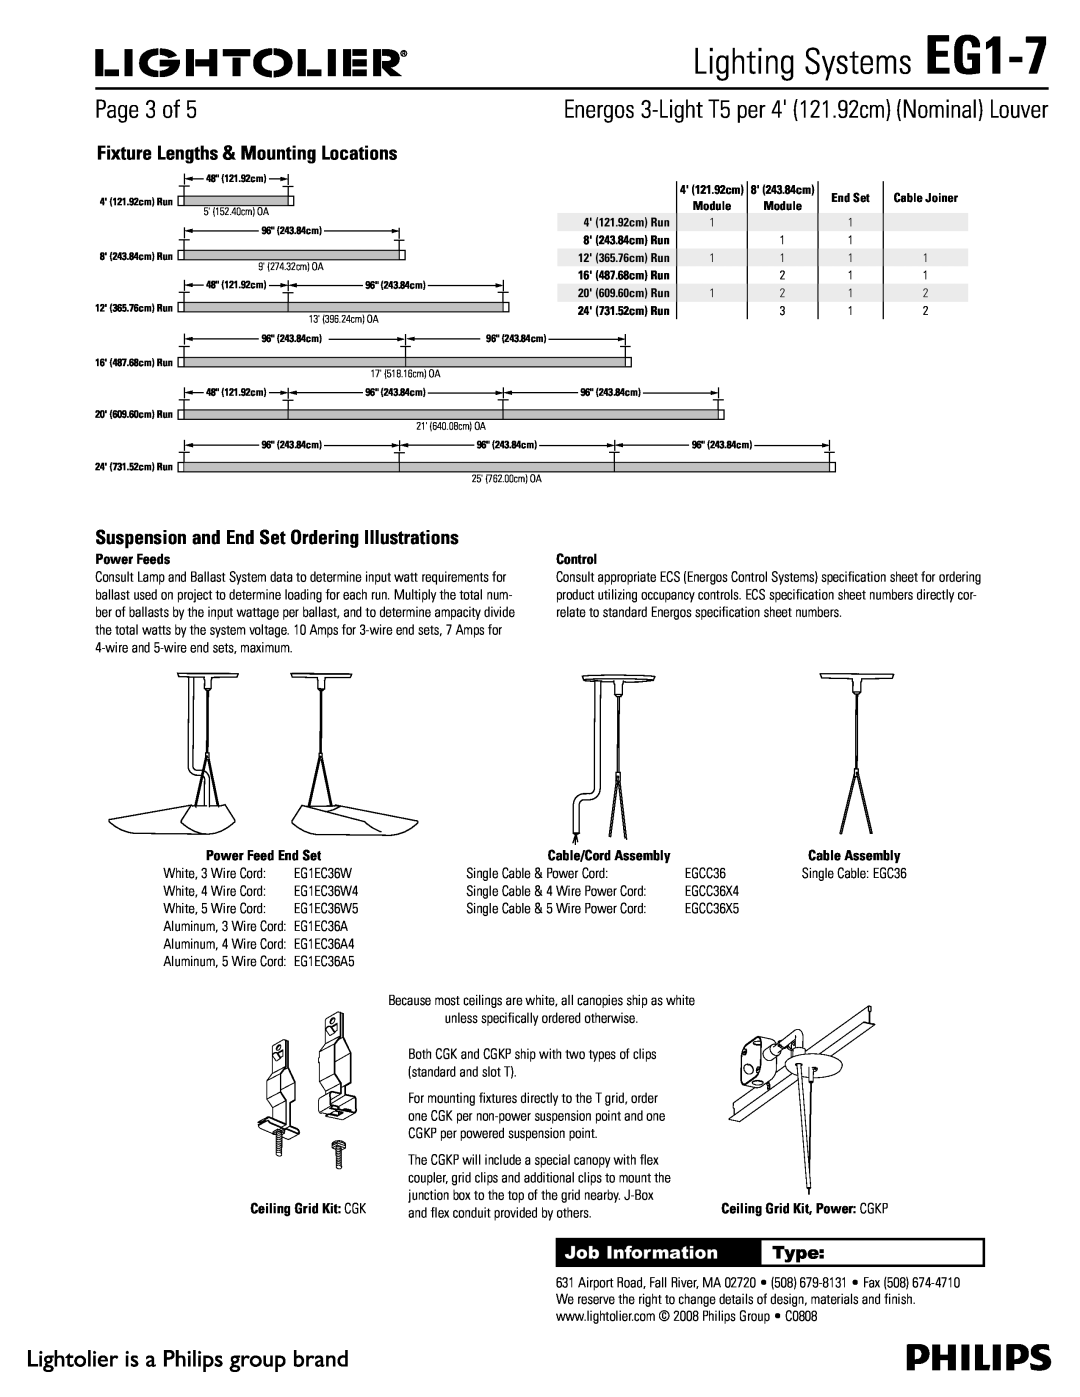 Lightolier Lighting Systems EG1-7, 1BHFPG, Job Information, Type, Ceiling Grid Kit $, 4 121.92cm Run, End Set 